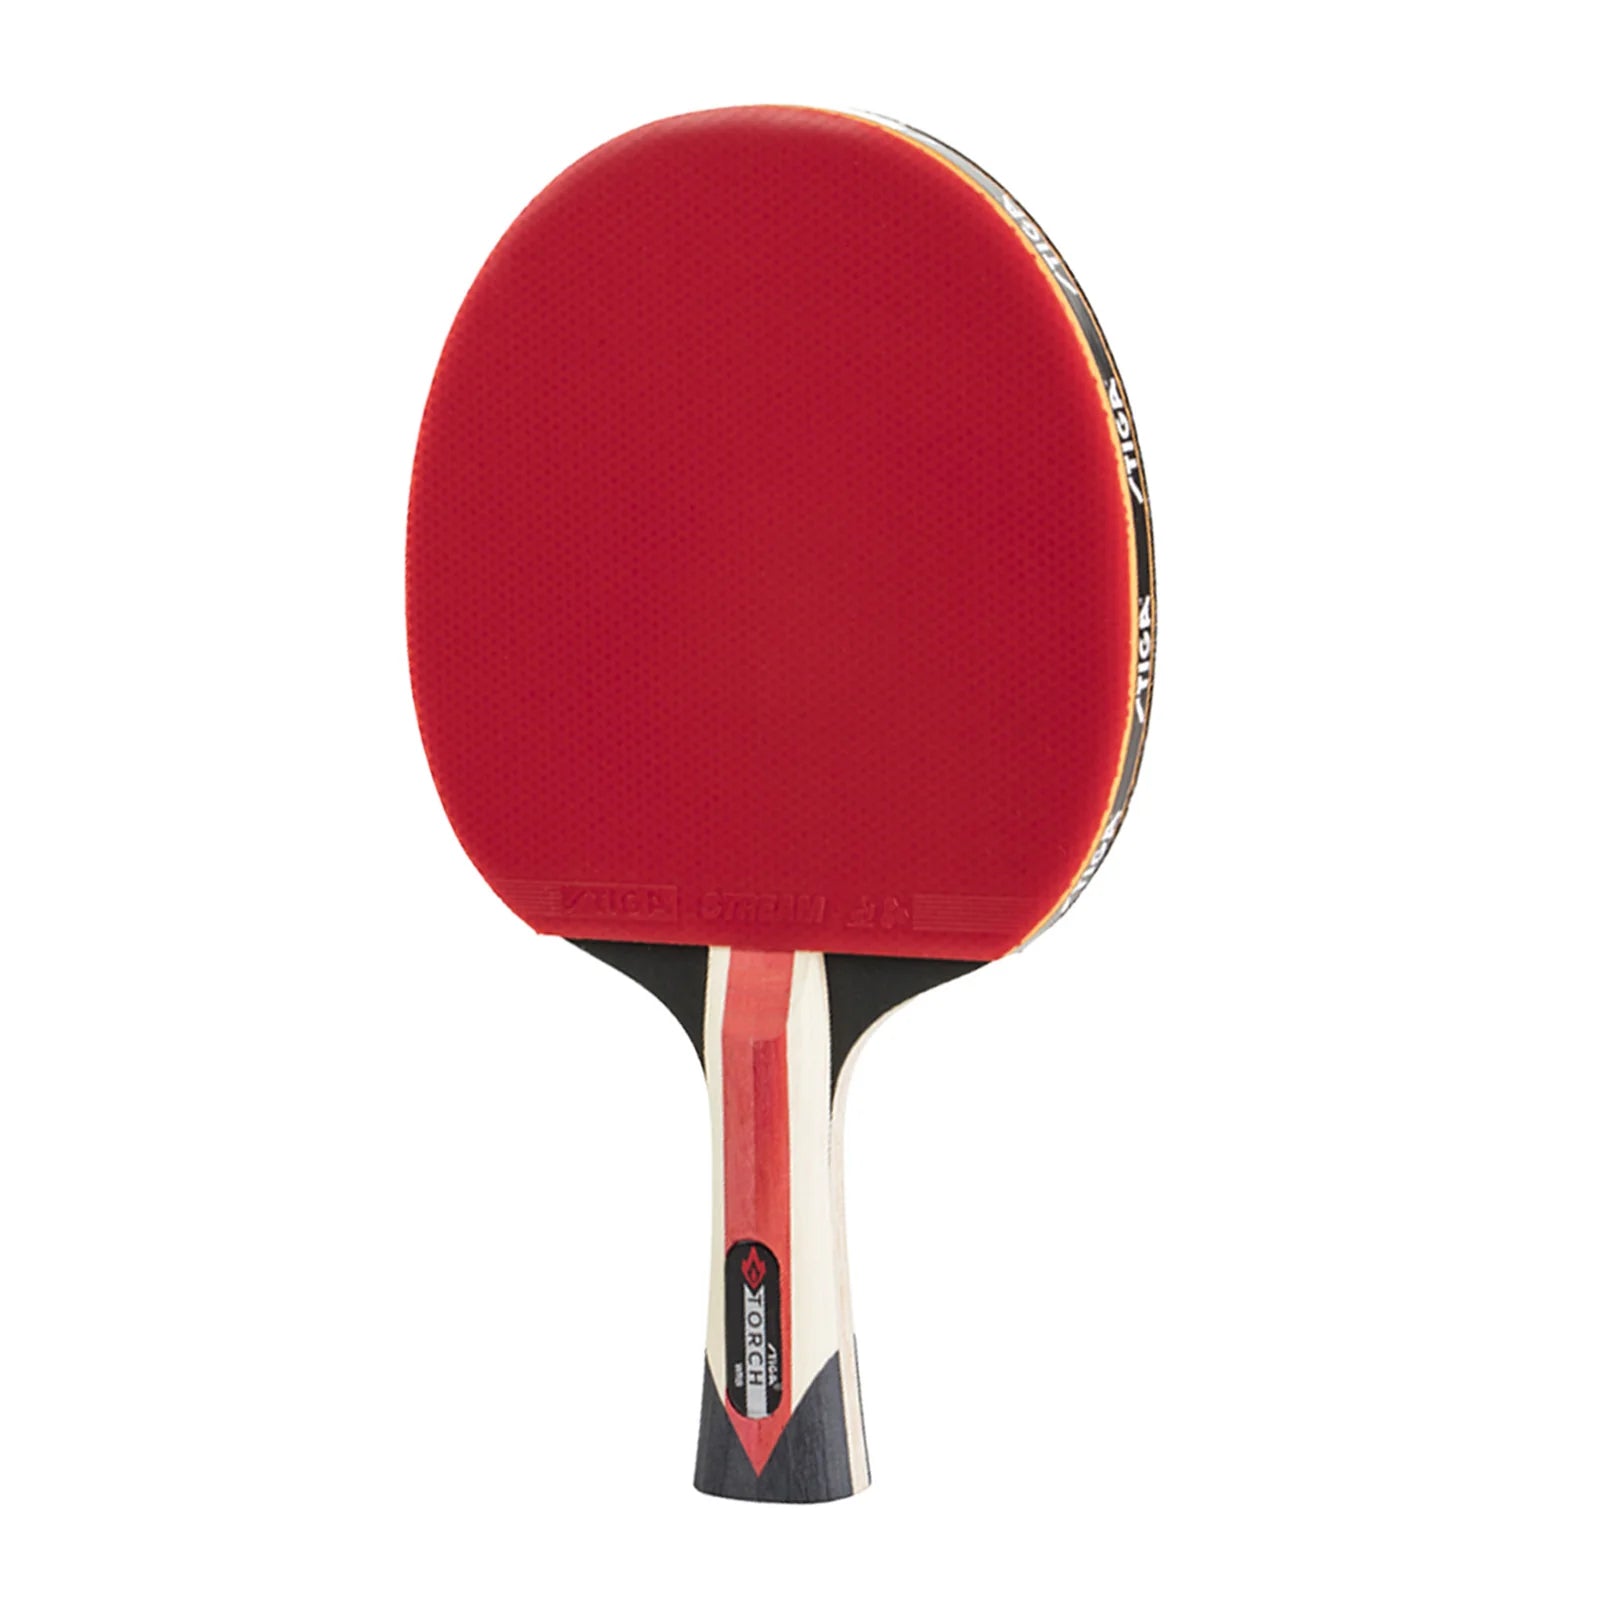 STIGA Torch Ping Pong Paddle